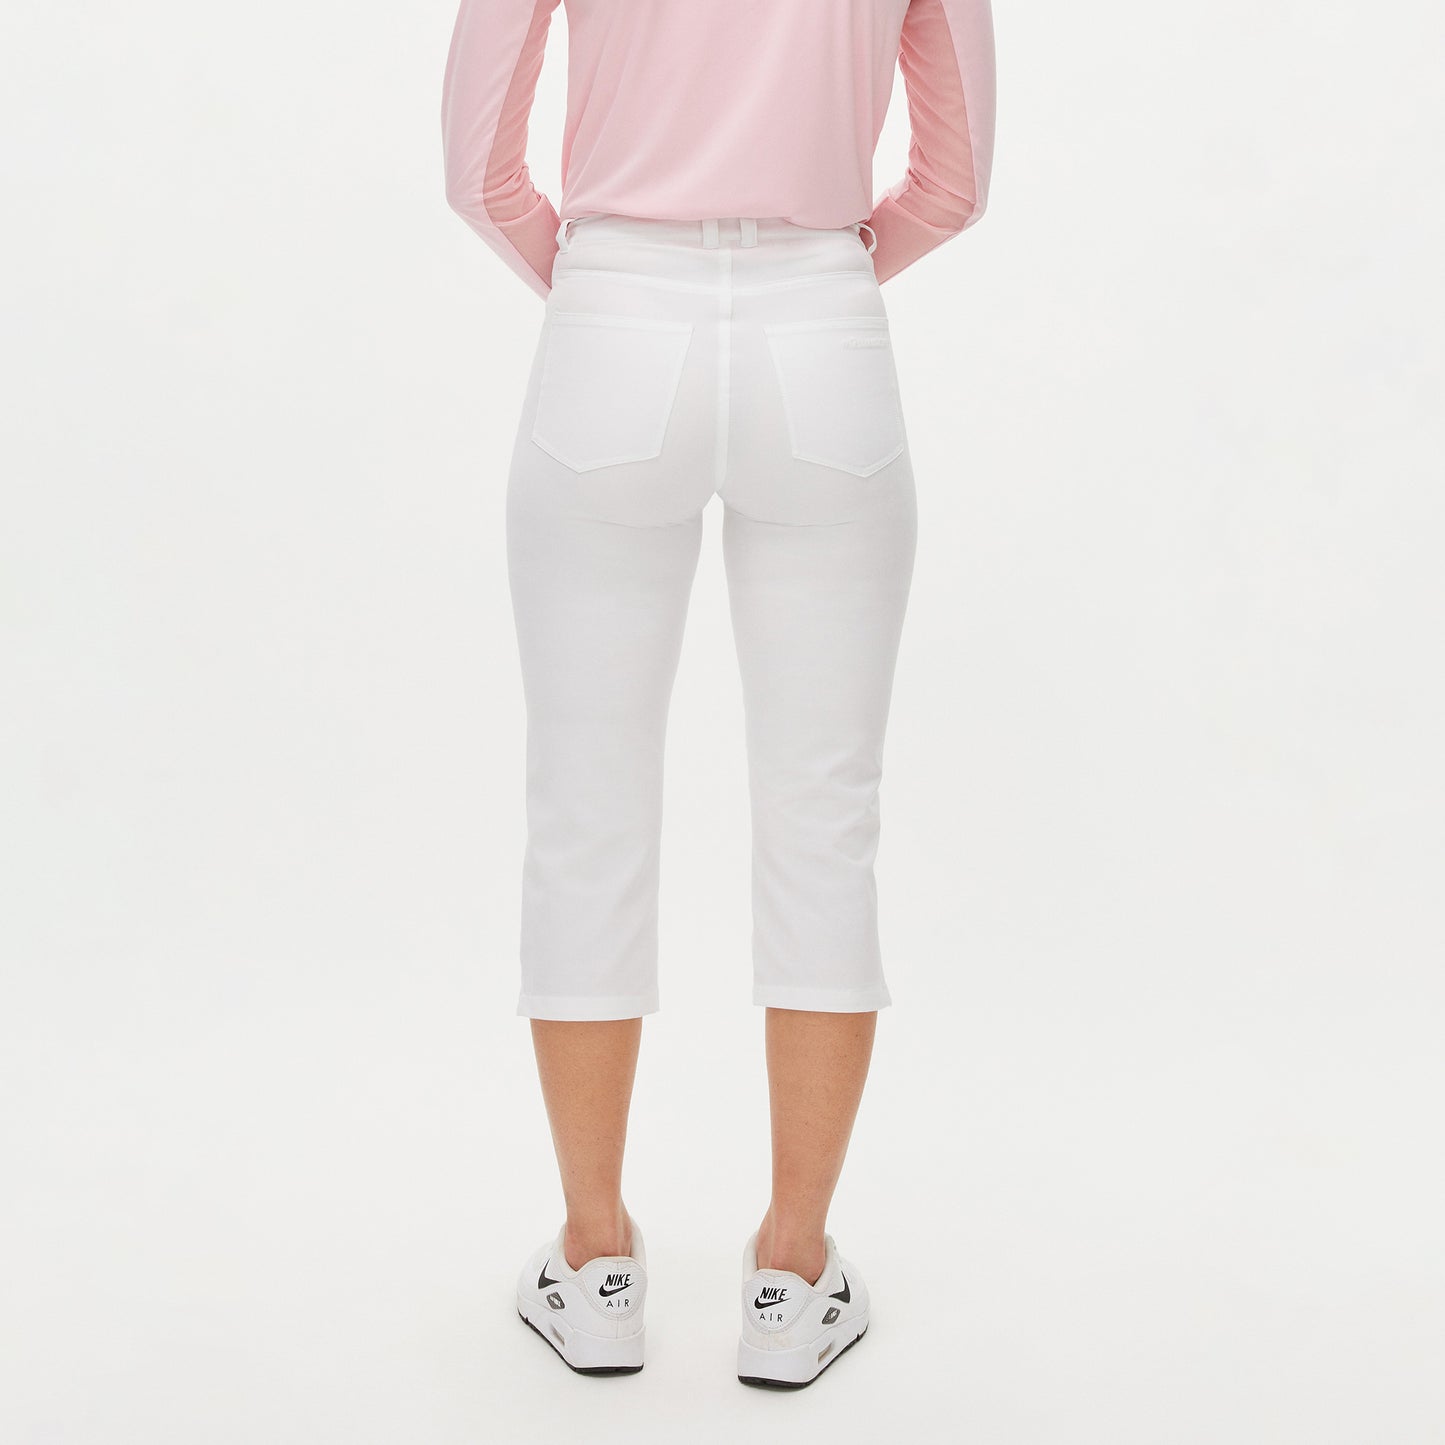 Rohnisch Ladies Lightweight Comfort Golf Capris in White